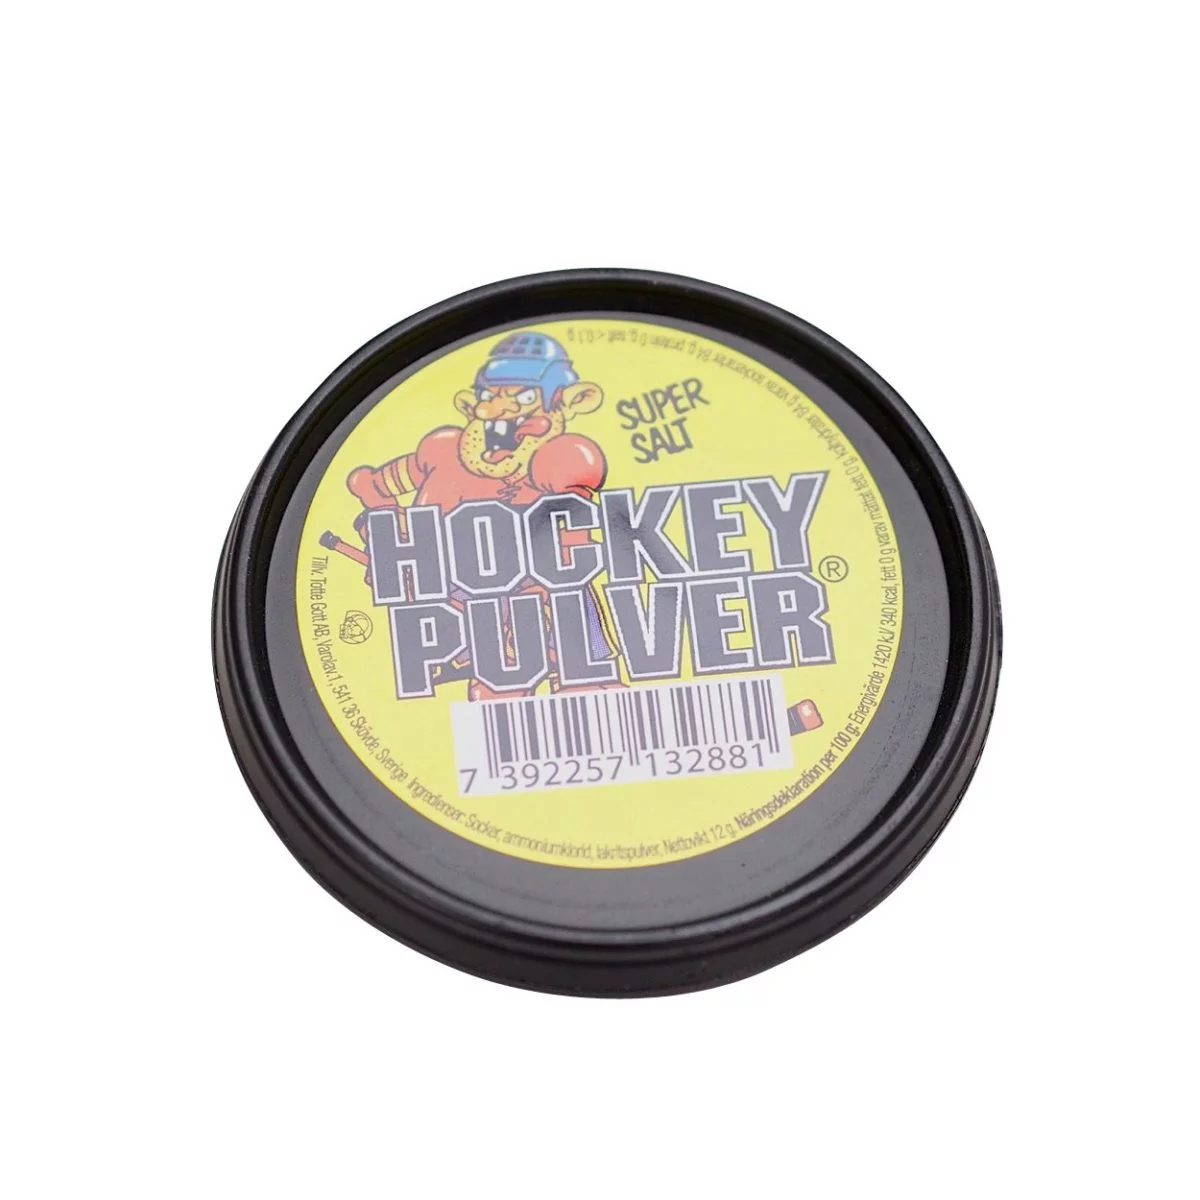 Hockey Pulver Super Salt (12g) 2